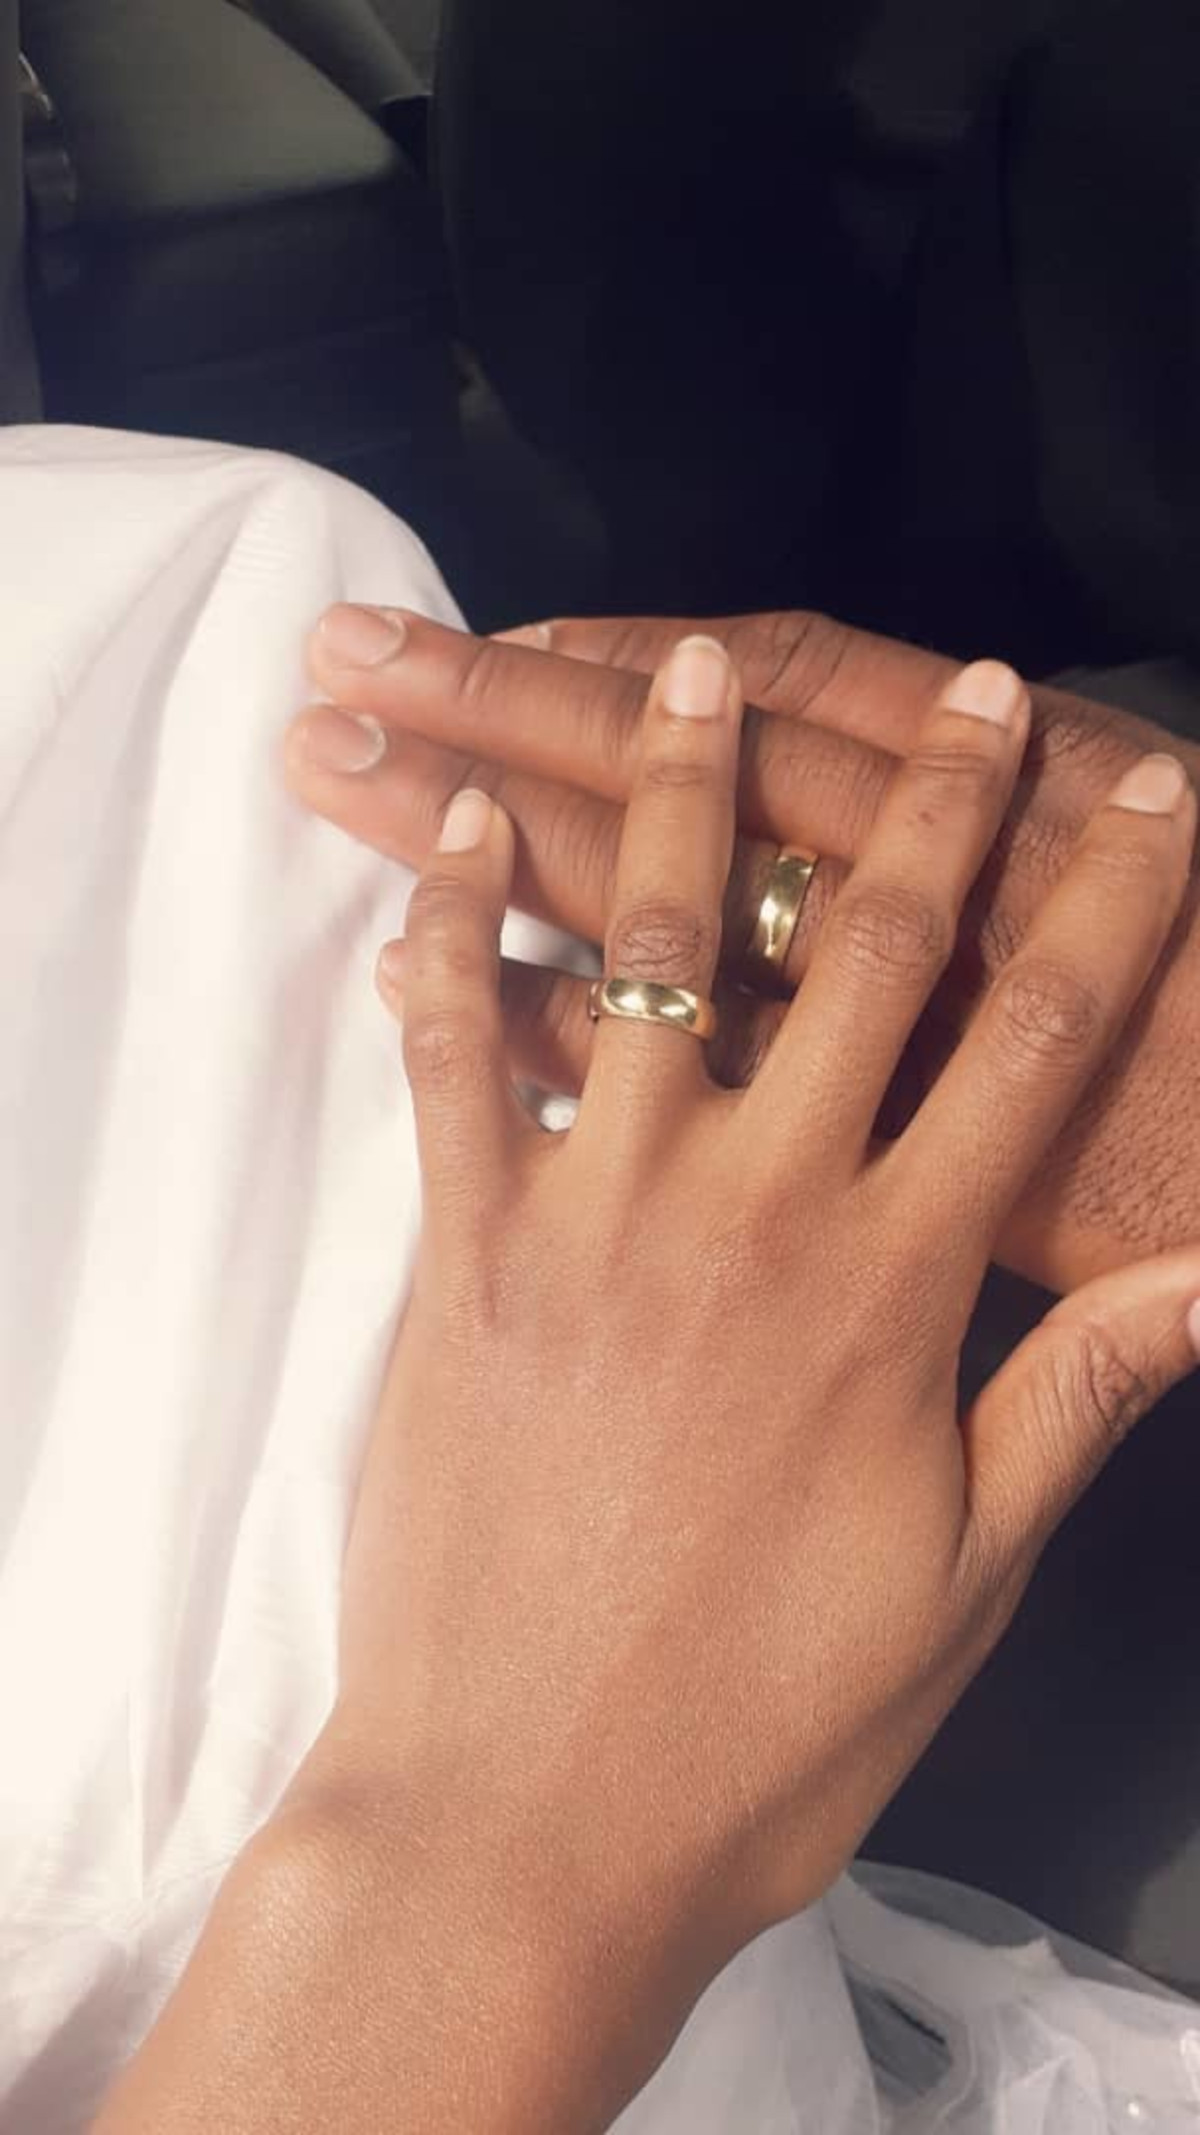 Mariage: ces rituels qui résistent au temps